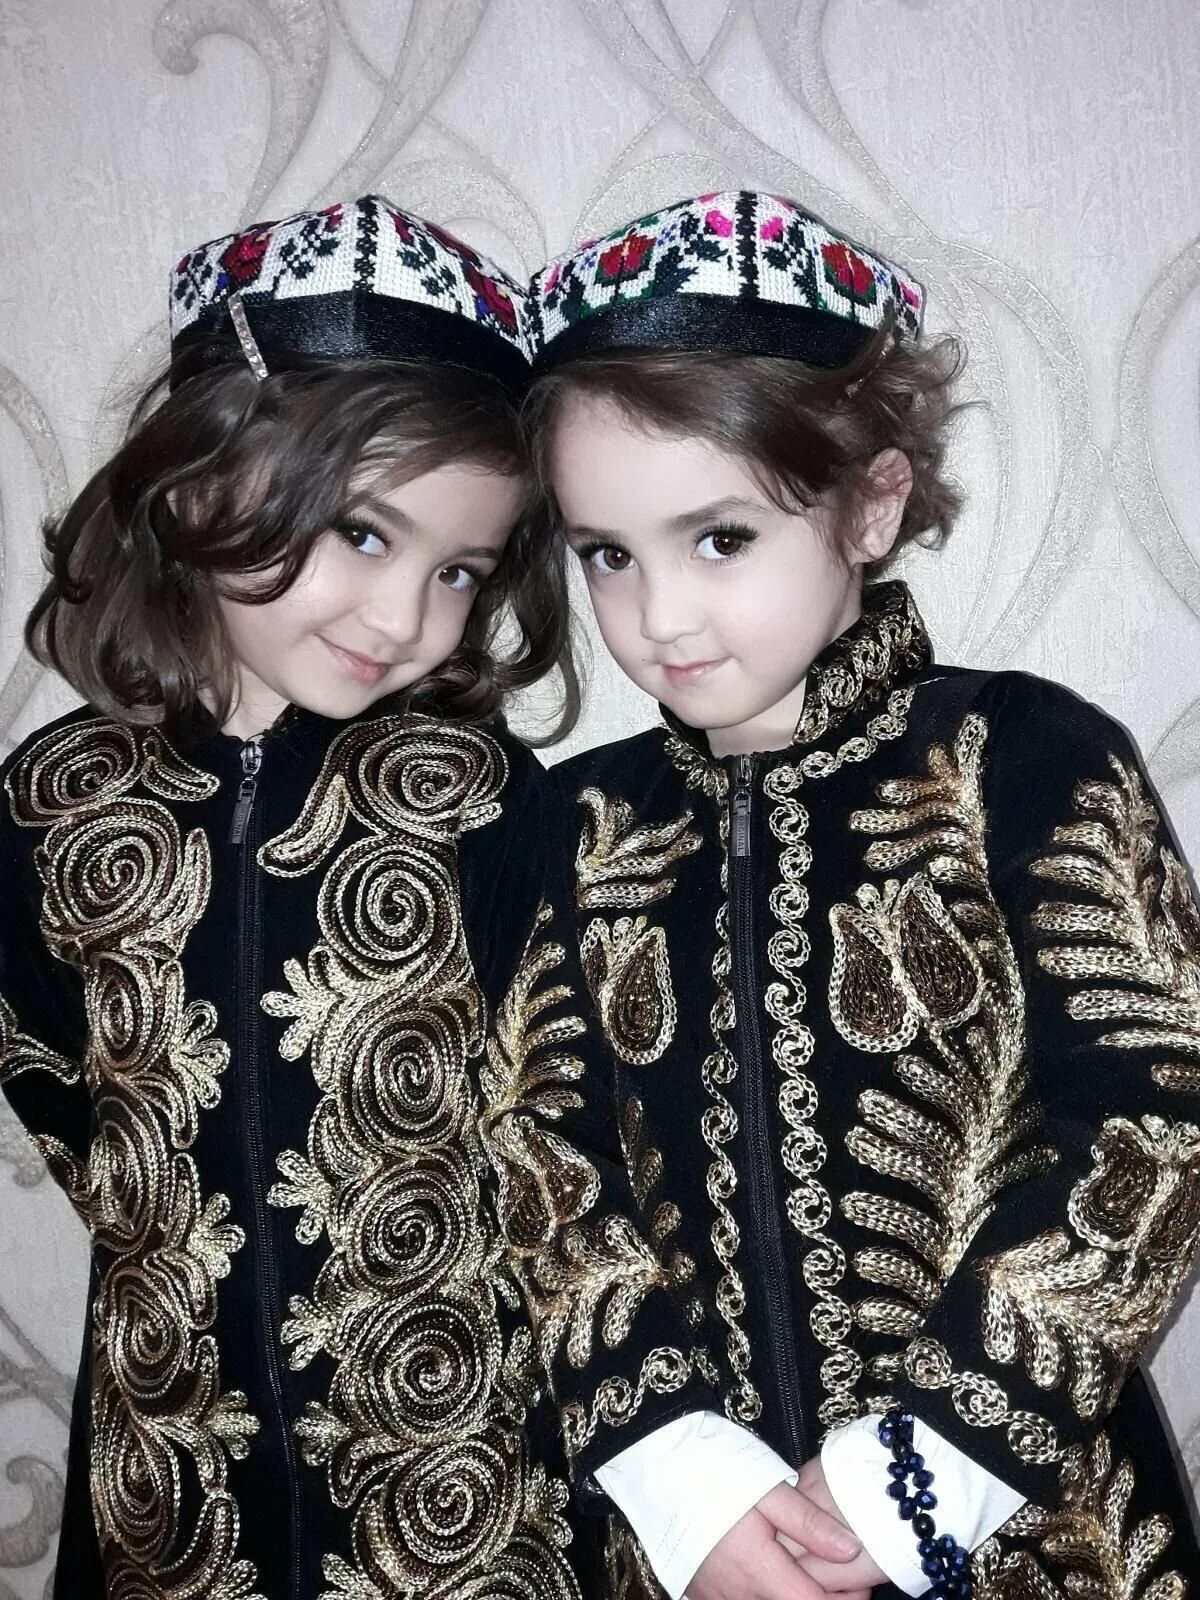 Rasmlar bolalar. Узбекские платья для девочек. Узбекская Национальная одежда. Узбекские национальные платья для девочек. Красивые узбекские дети.